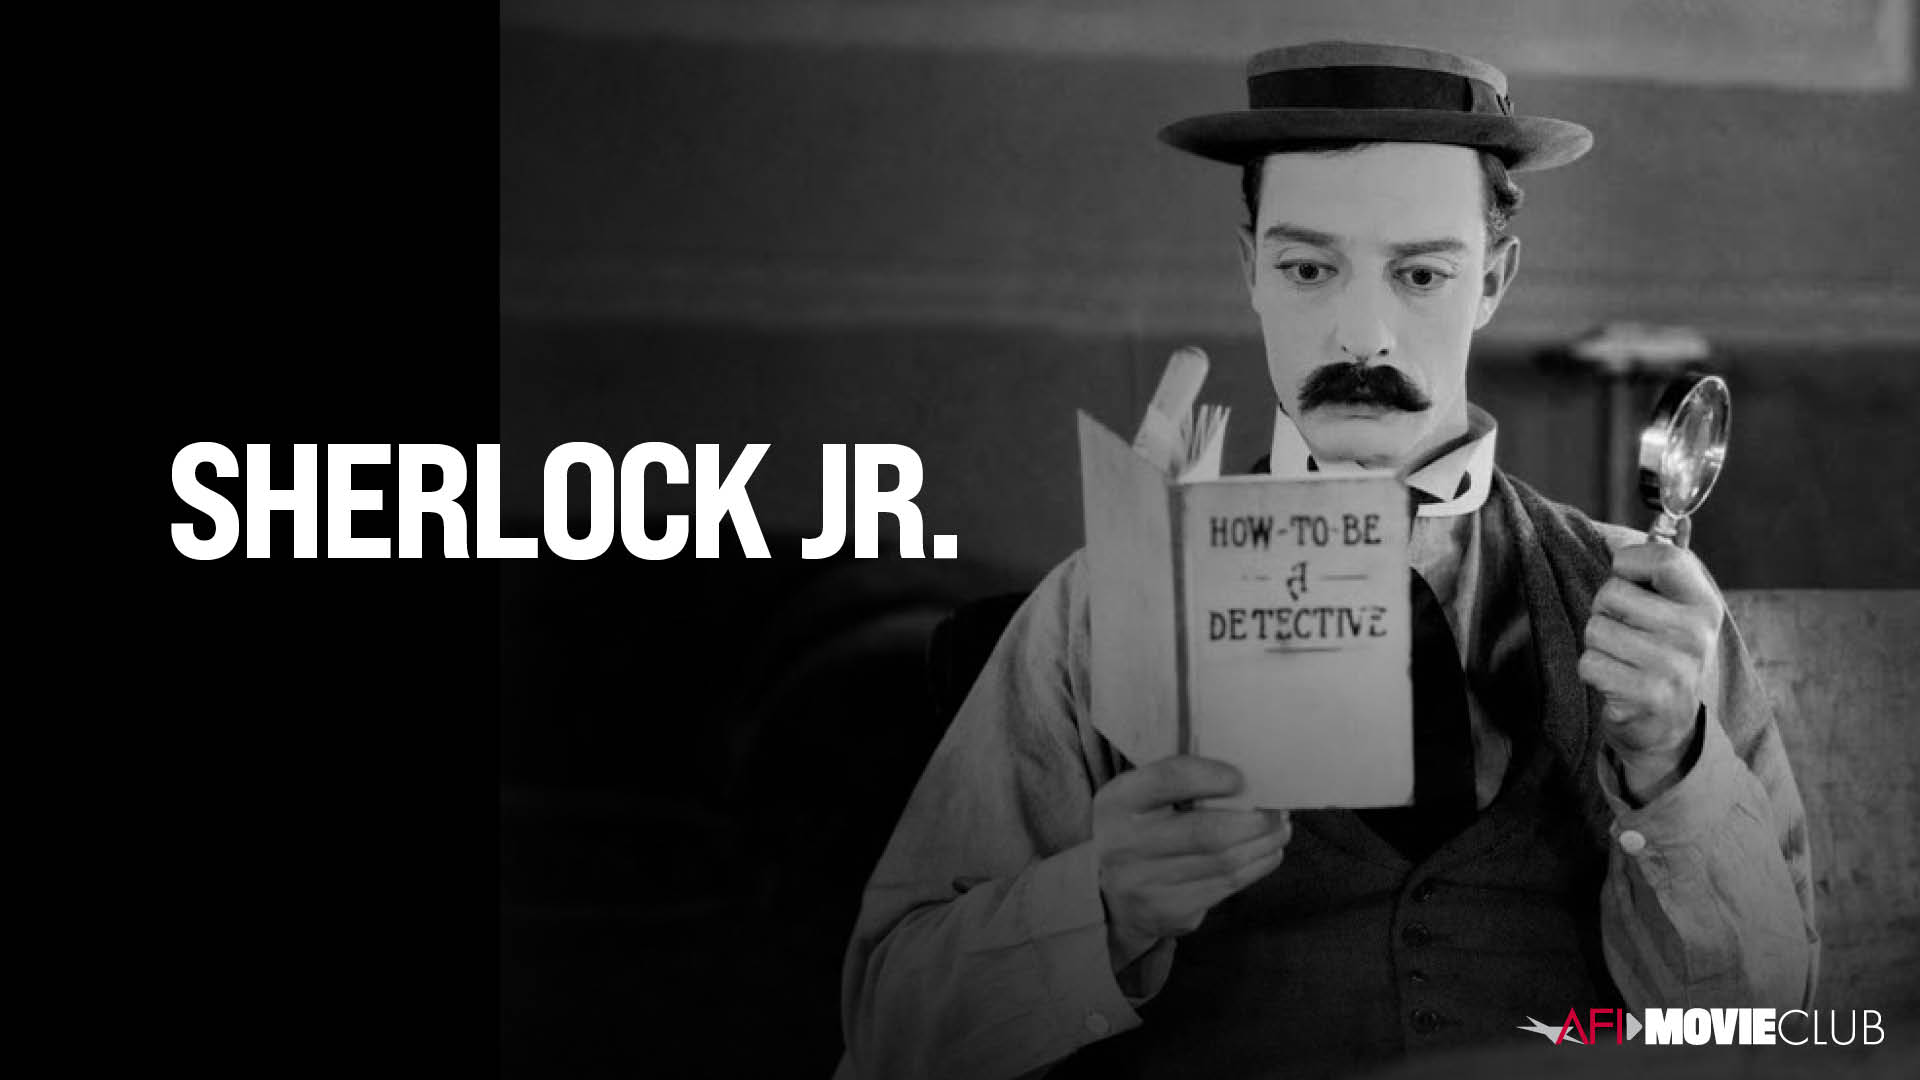 Sherlock Jr. Film Still - Buster Keaton